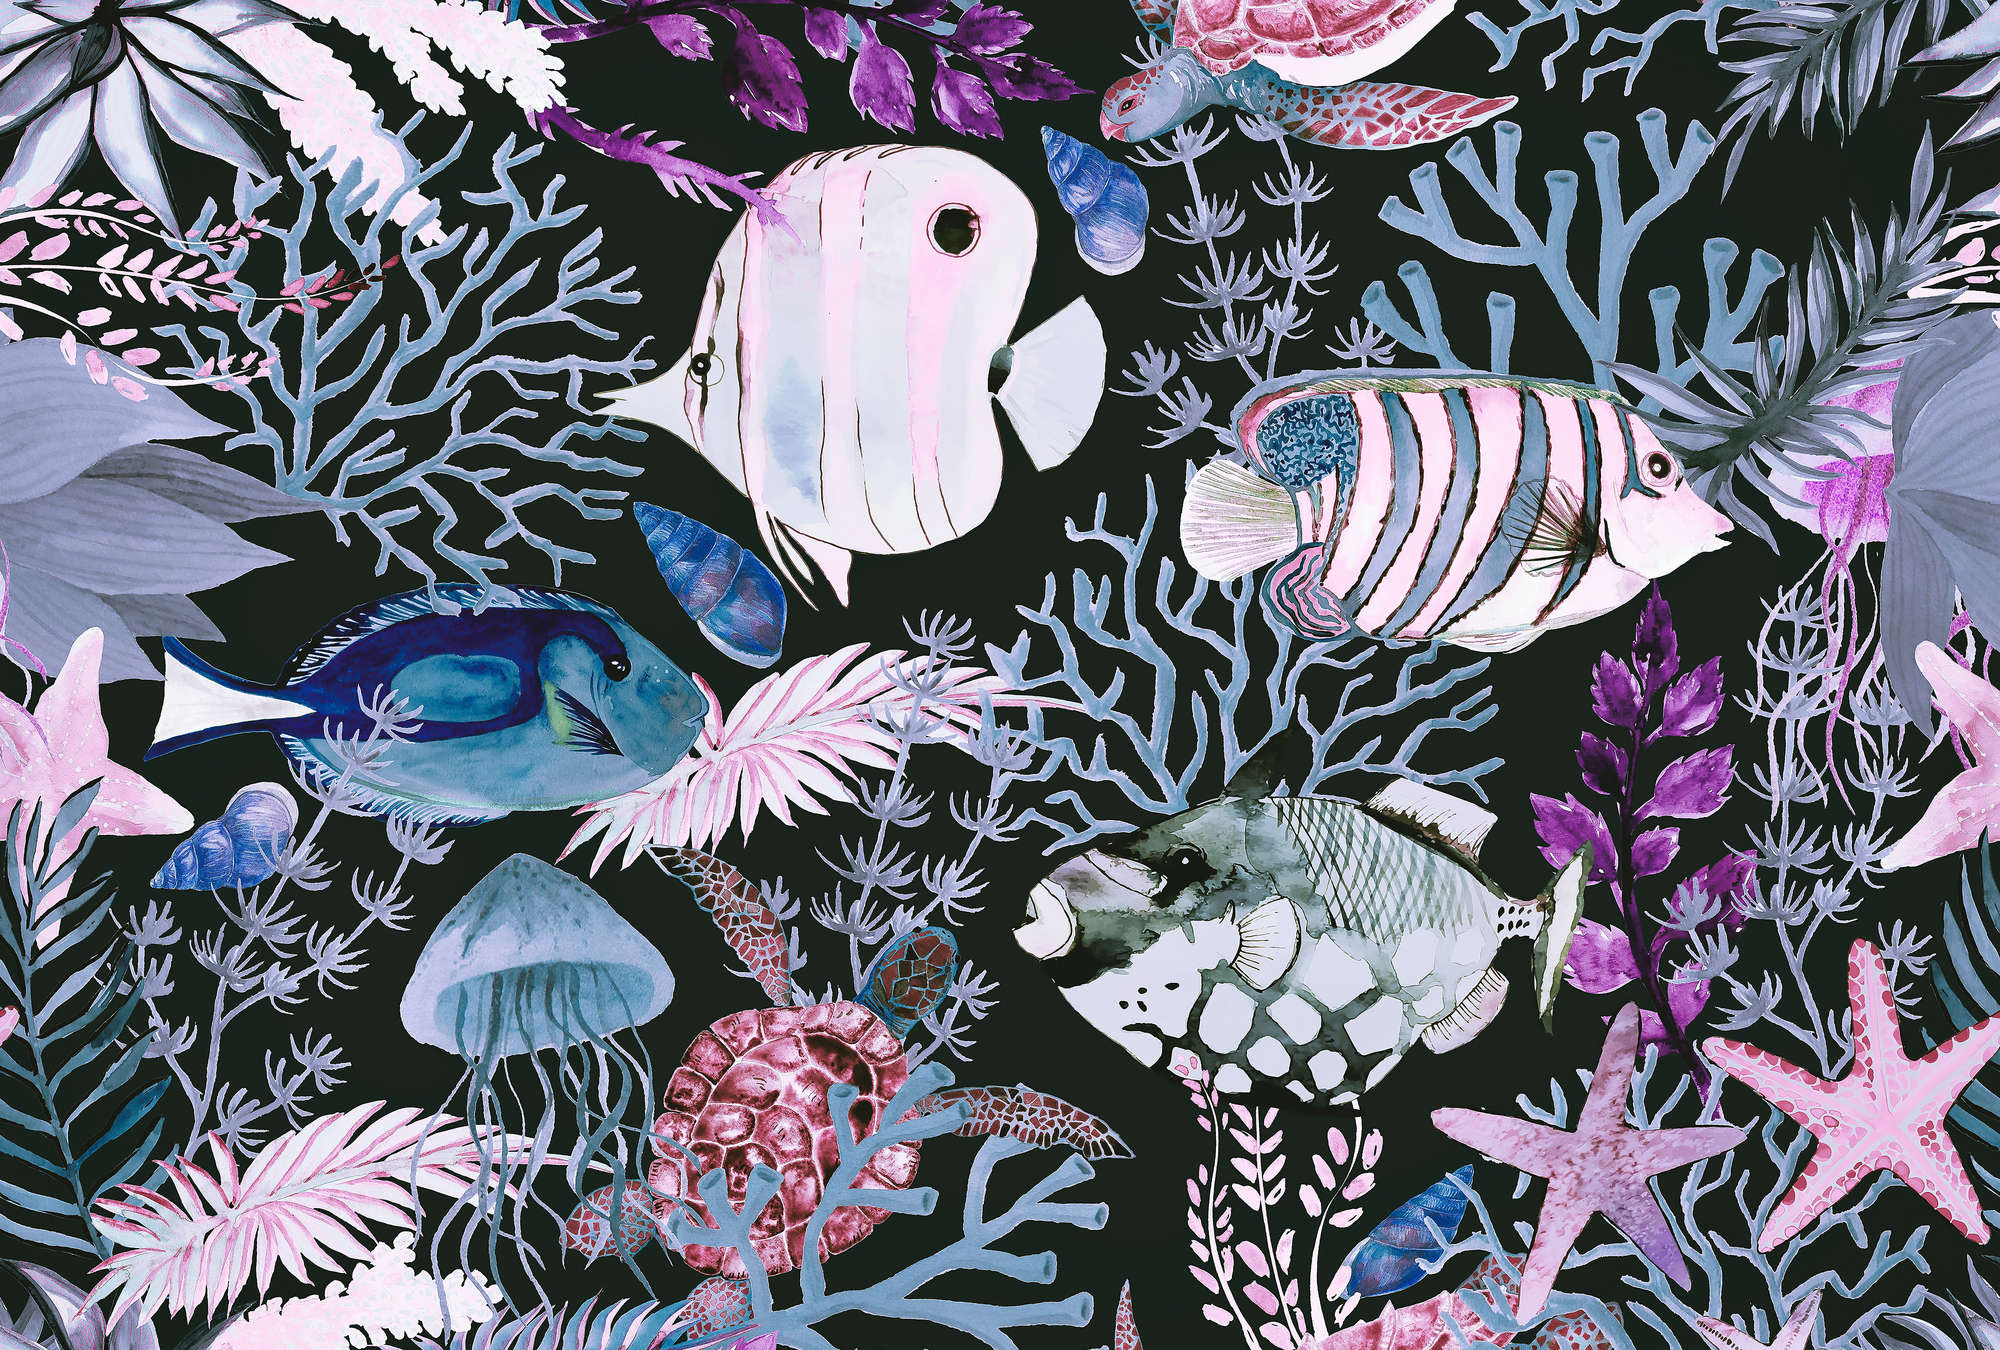             Papel pintado submarino con peces y corales en estilo acuarela
        